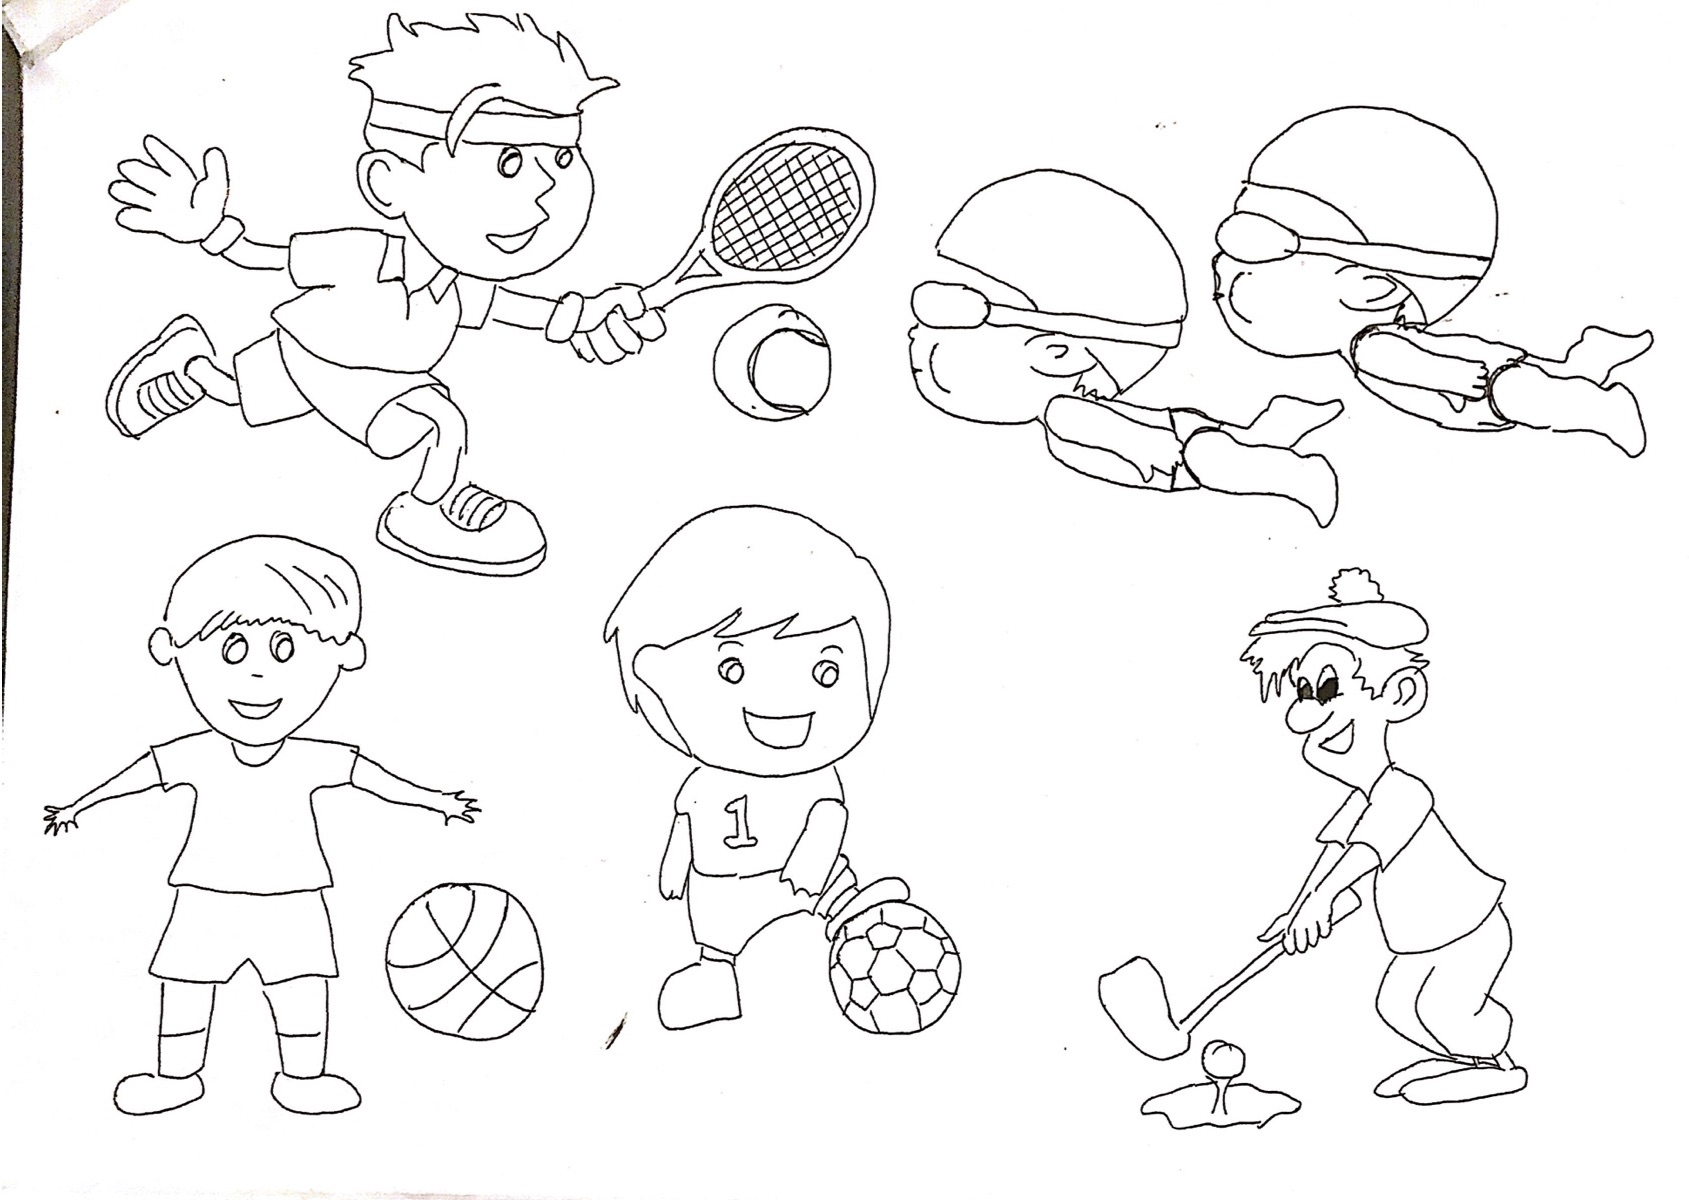 Kolorowanka, na obrazkach dzieci uprawiające różne sporty, piłę nożną, pływanie, golf.